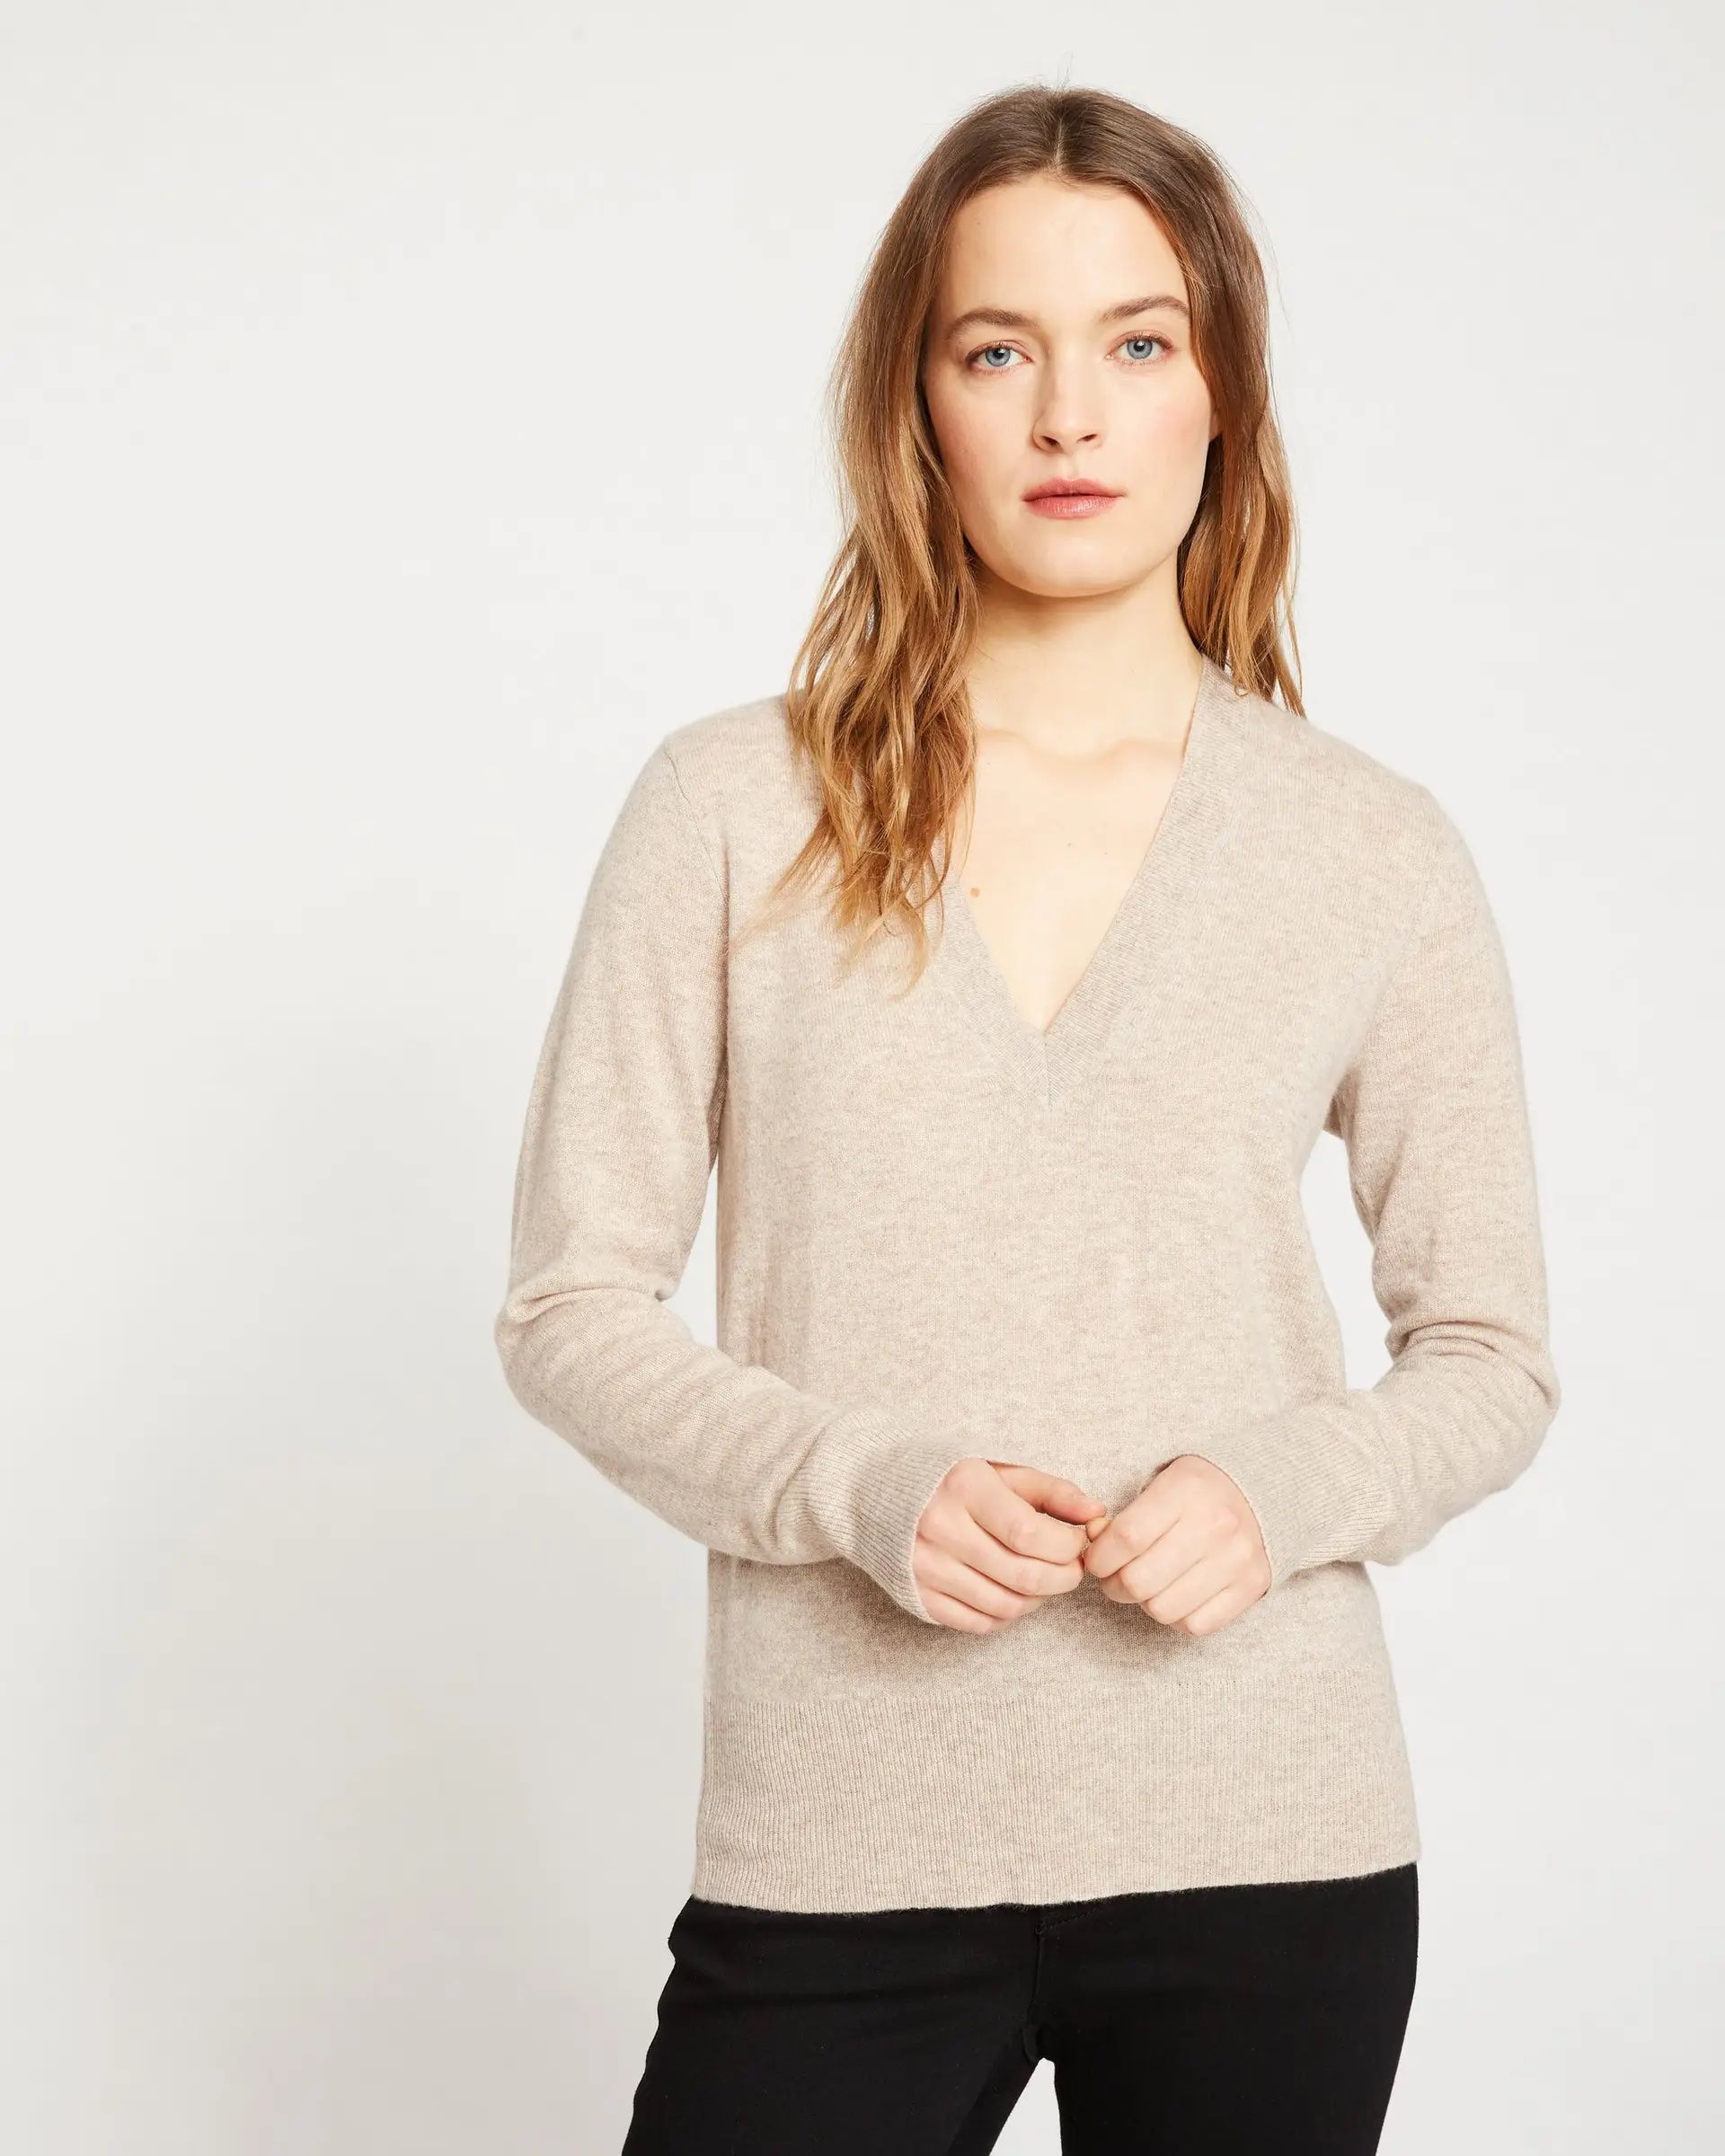 J Crew Wool blend light weight sweater pullover boyfriend beige brown v-neck $78